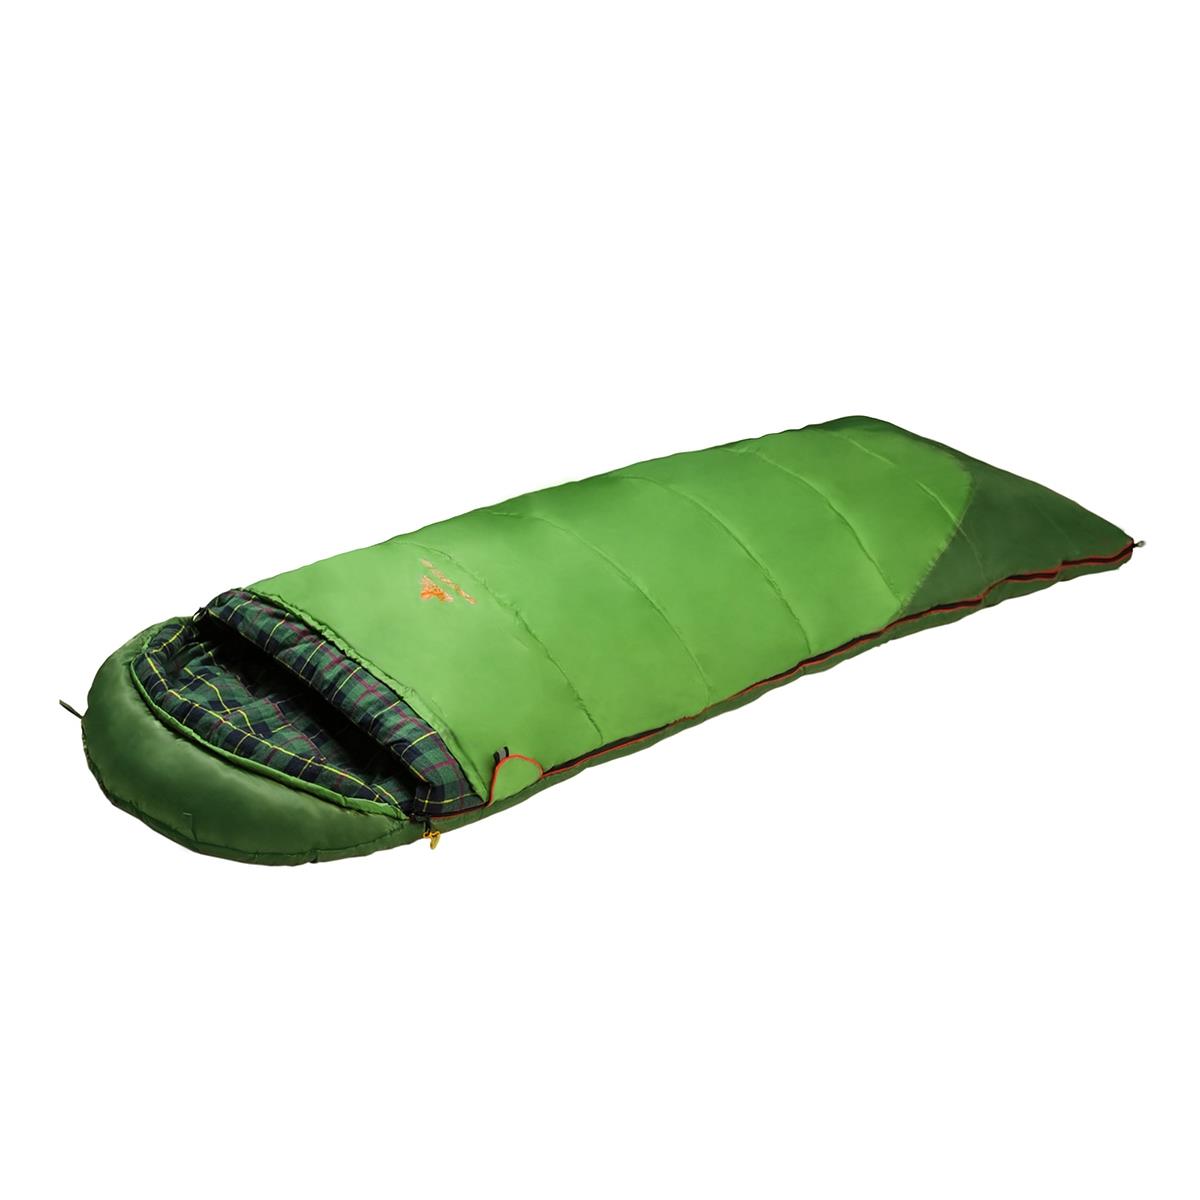 Мешок спальный SIBERIA Compact Plus зеленый правый (9272.01011) ALEXIKA мешок для пылесоса karcher синтетический 4 шт для wd 2 plus 3 2 863 314 0 нетк мат